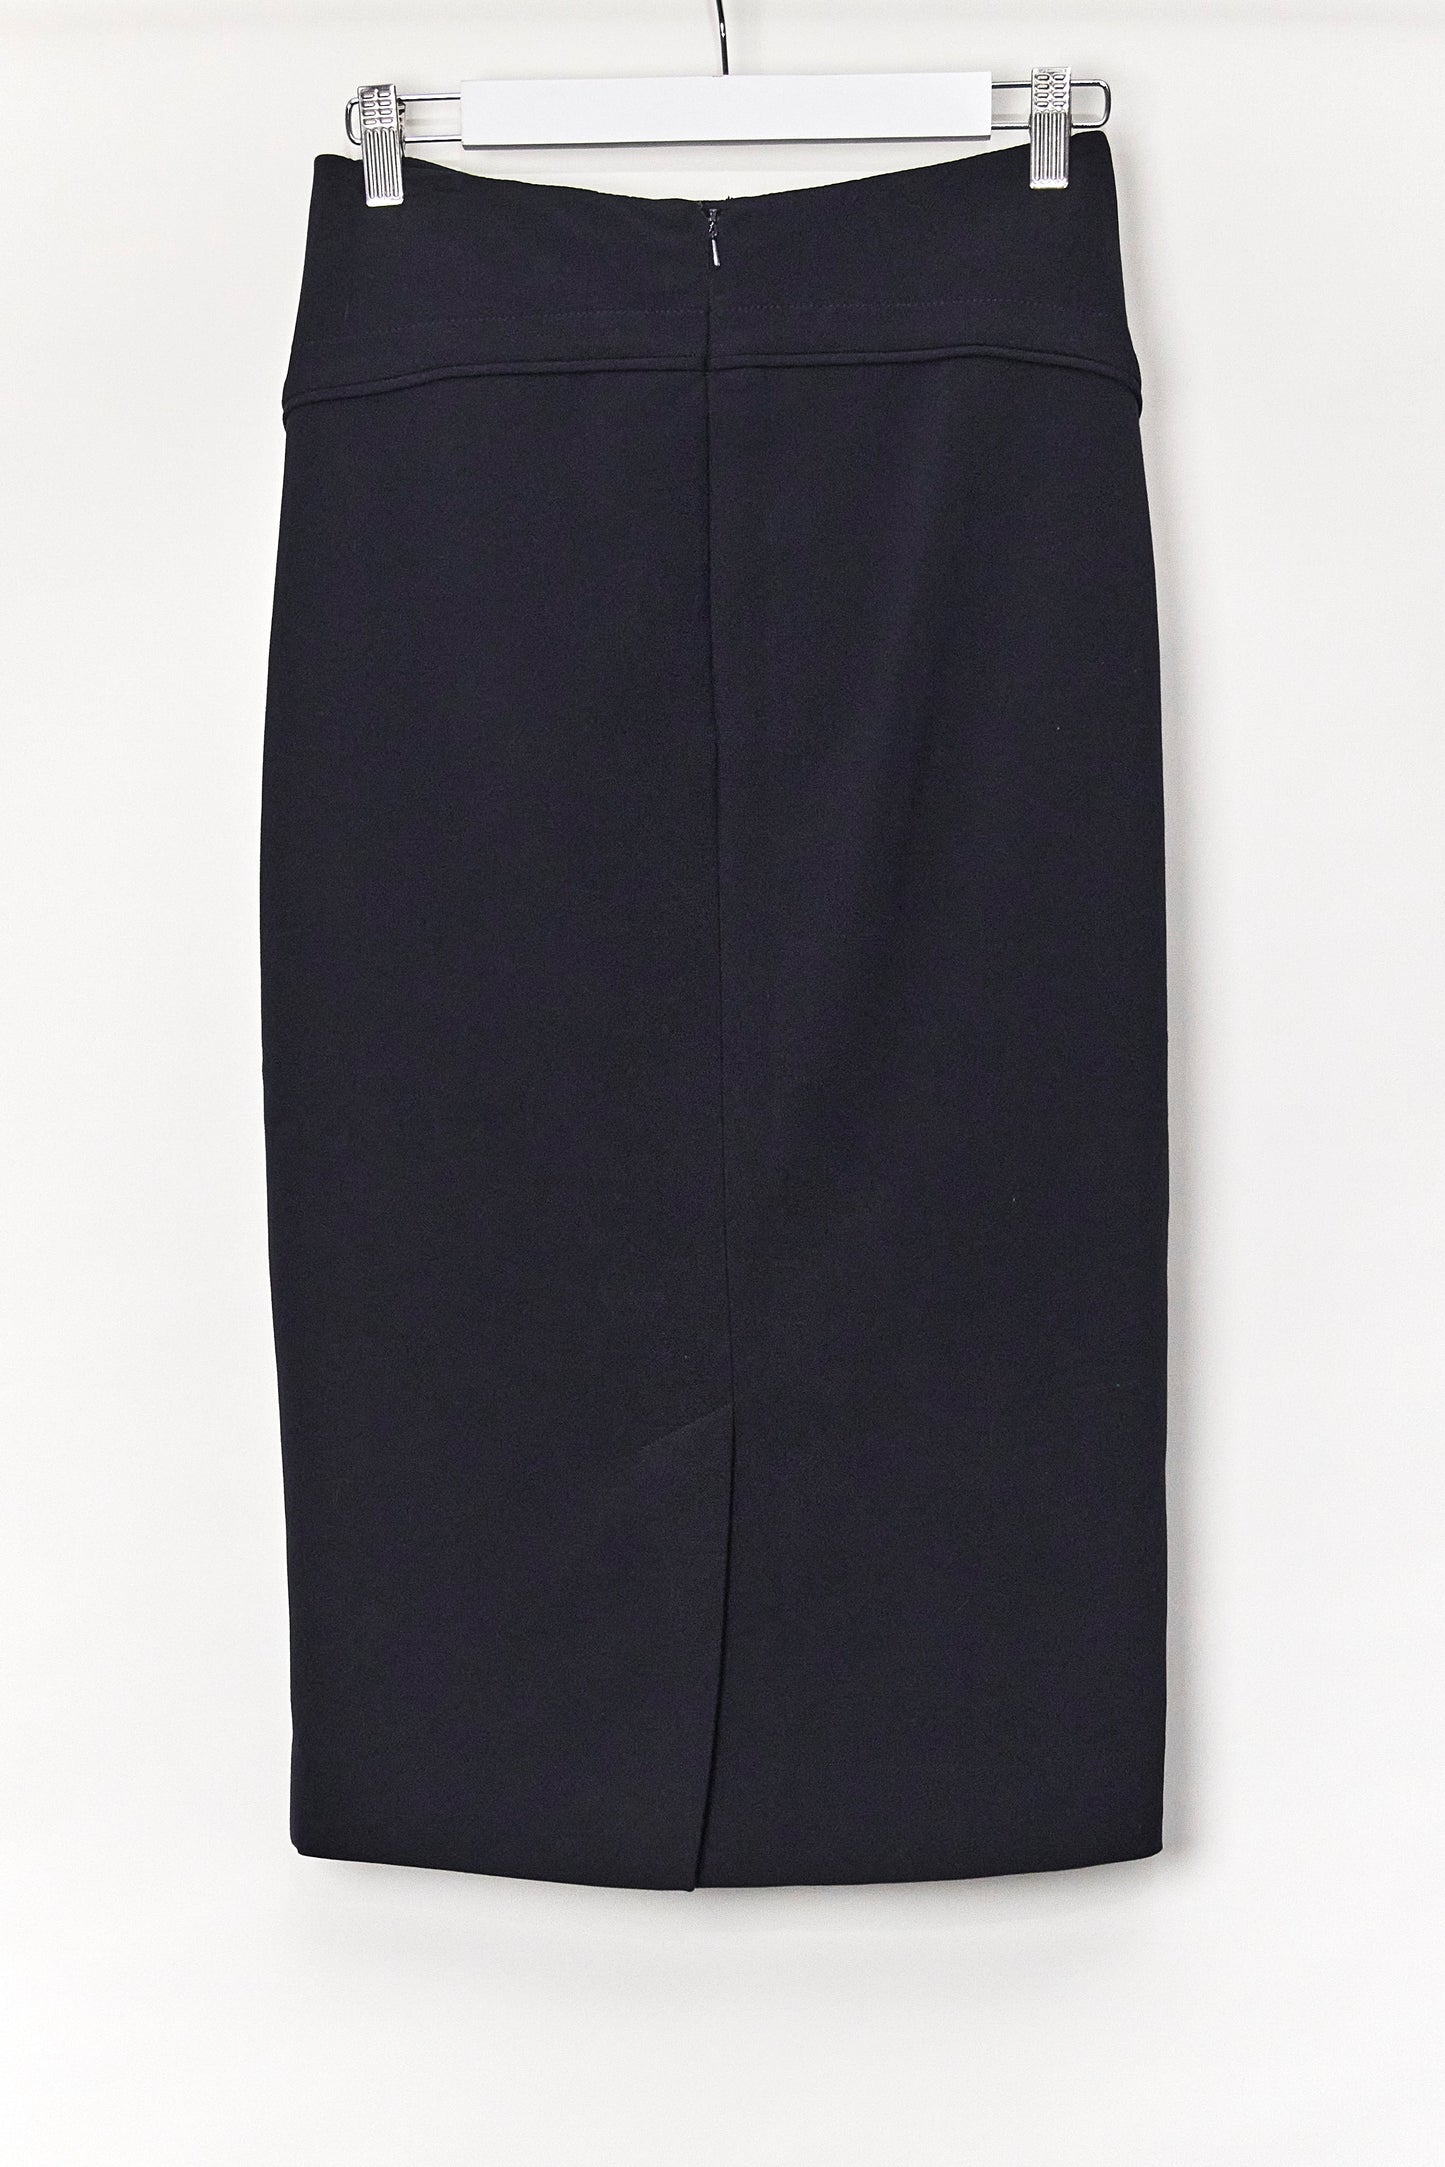 Womens Jaeger Navy Pencil Skirt Size 10